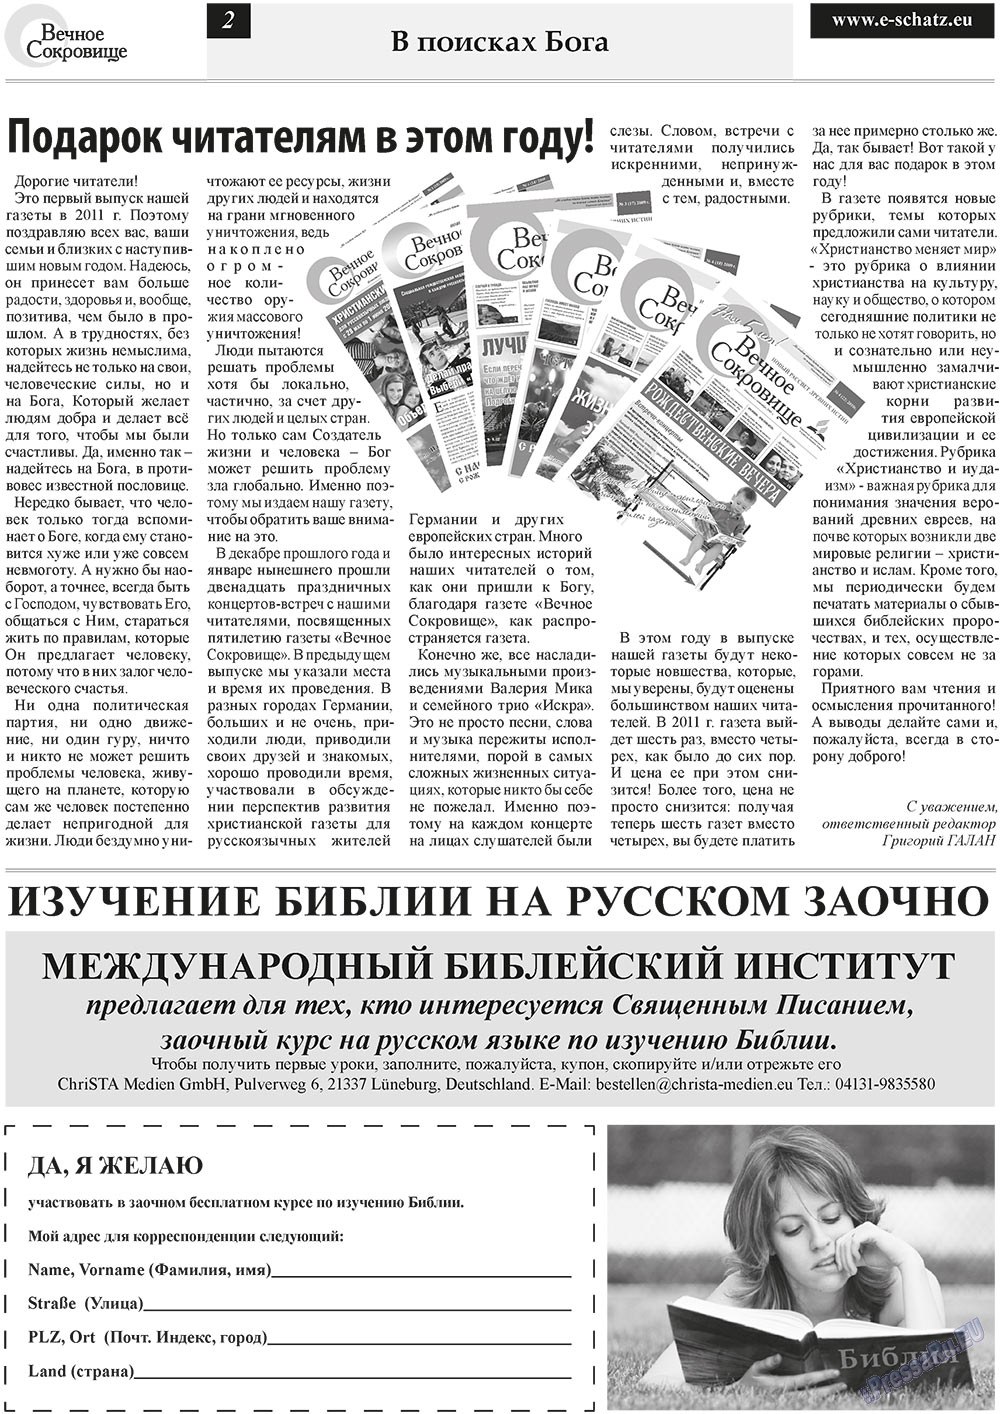 Вечное сокровище (газета). 2011 год, номер 1, стр. 2